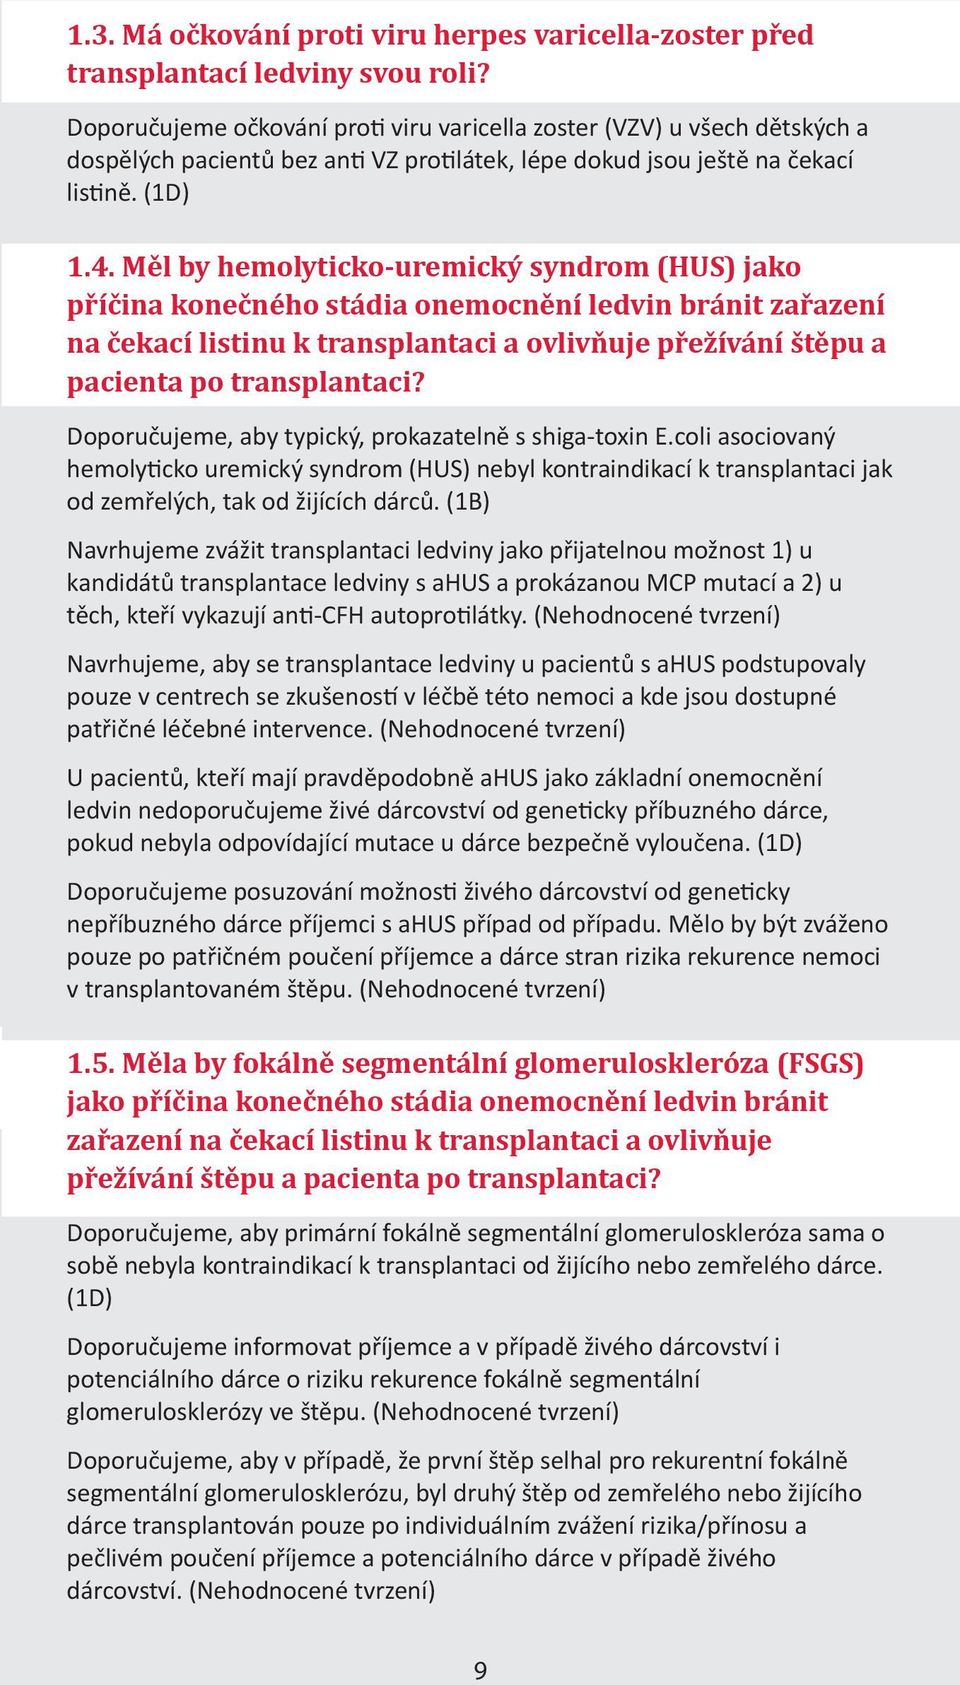 Měl by hemolyticko-uremický syndrom (HUS) jako příčina konečného stádia onemocnění ledvin bránit zařazení na čekací listinu k transplantaci a ovlivňuje přežívání štěpu a pacienta po transplantaci?